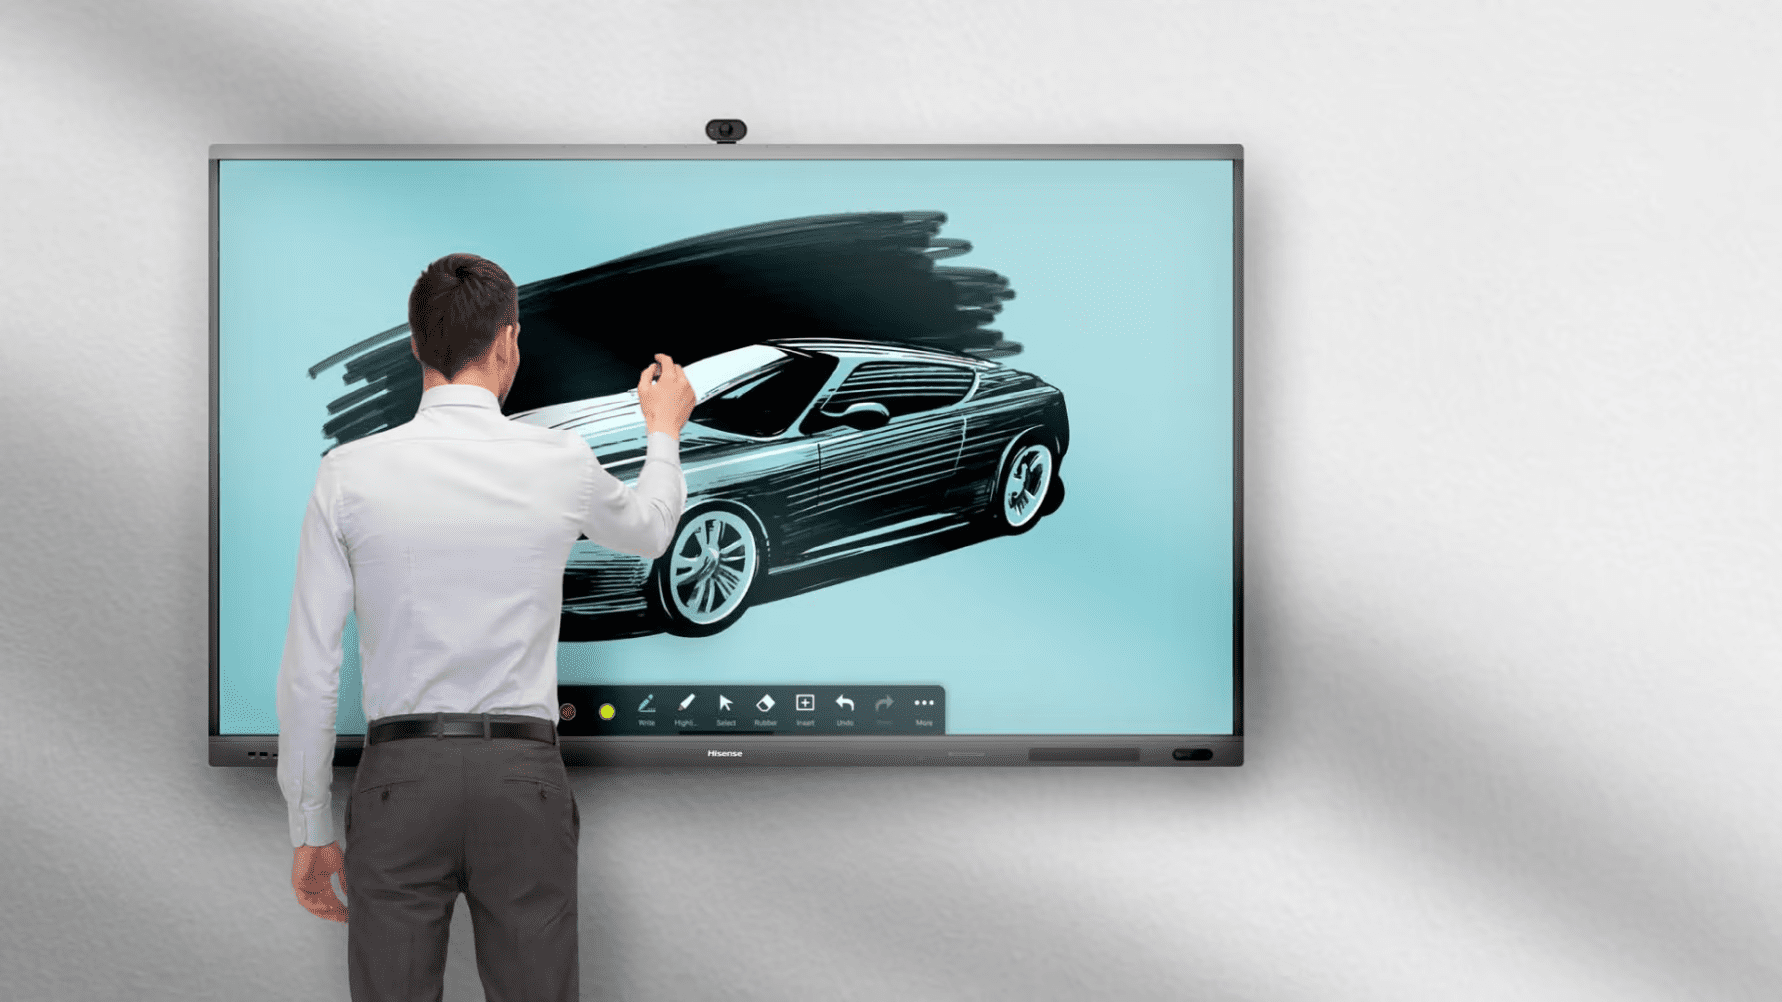 Hisense interaktiva skärmar med nya och spännande funktioner